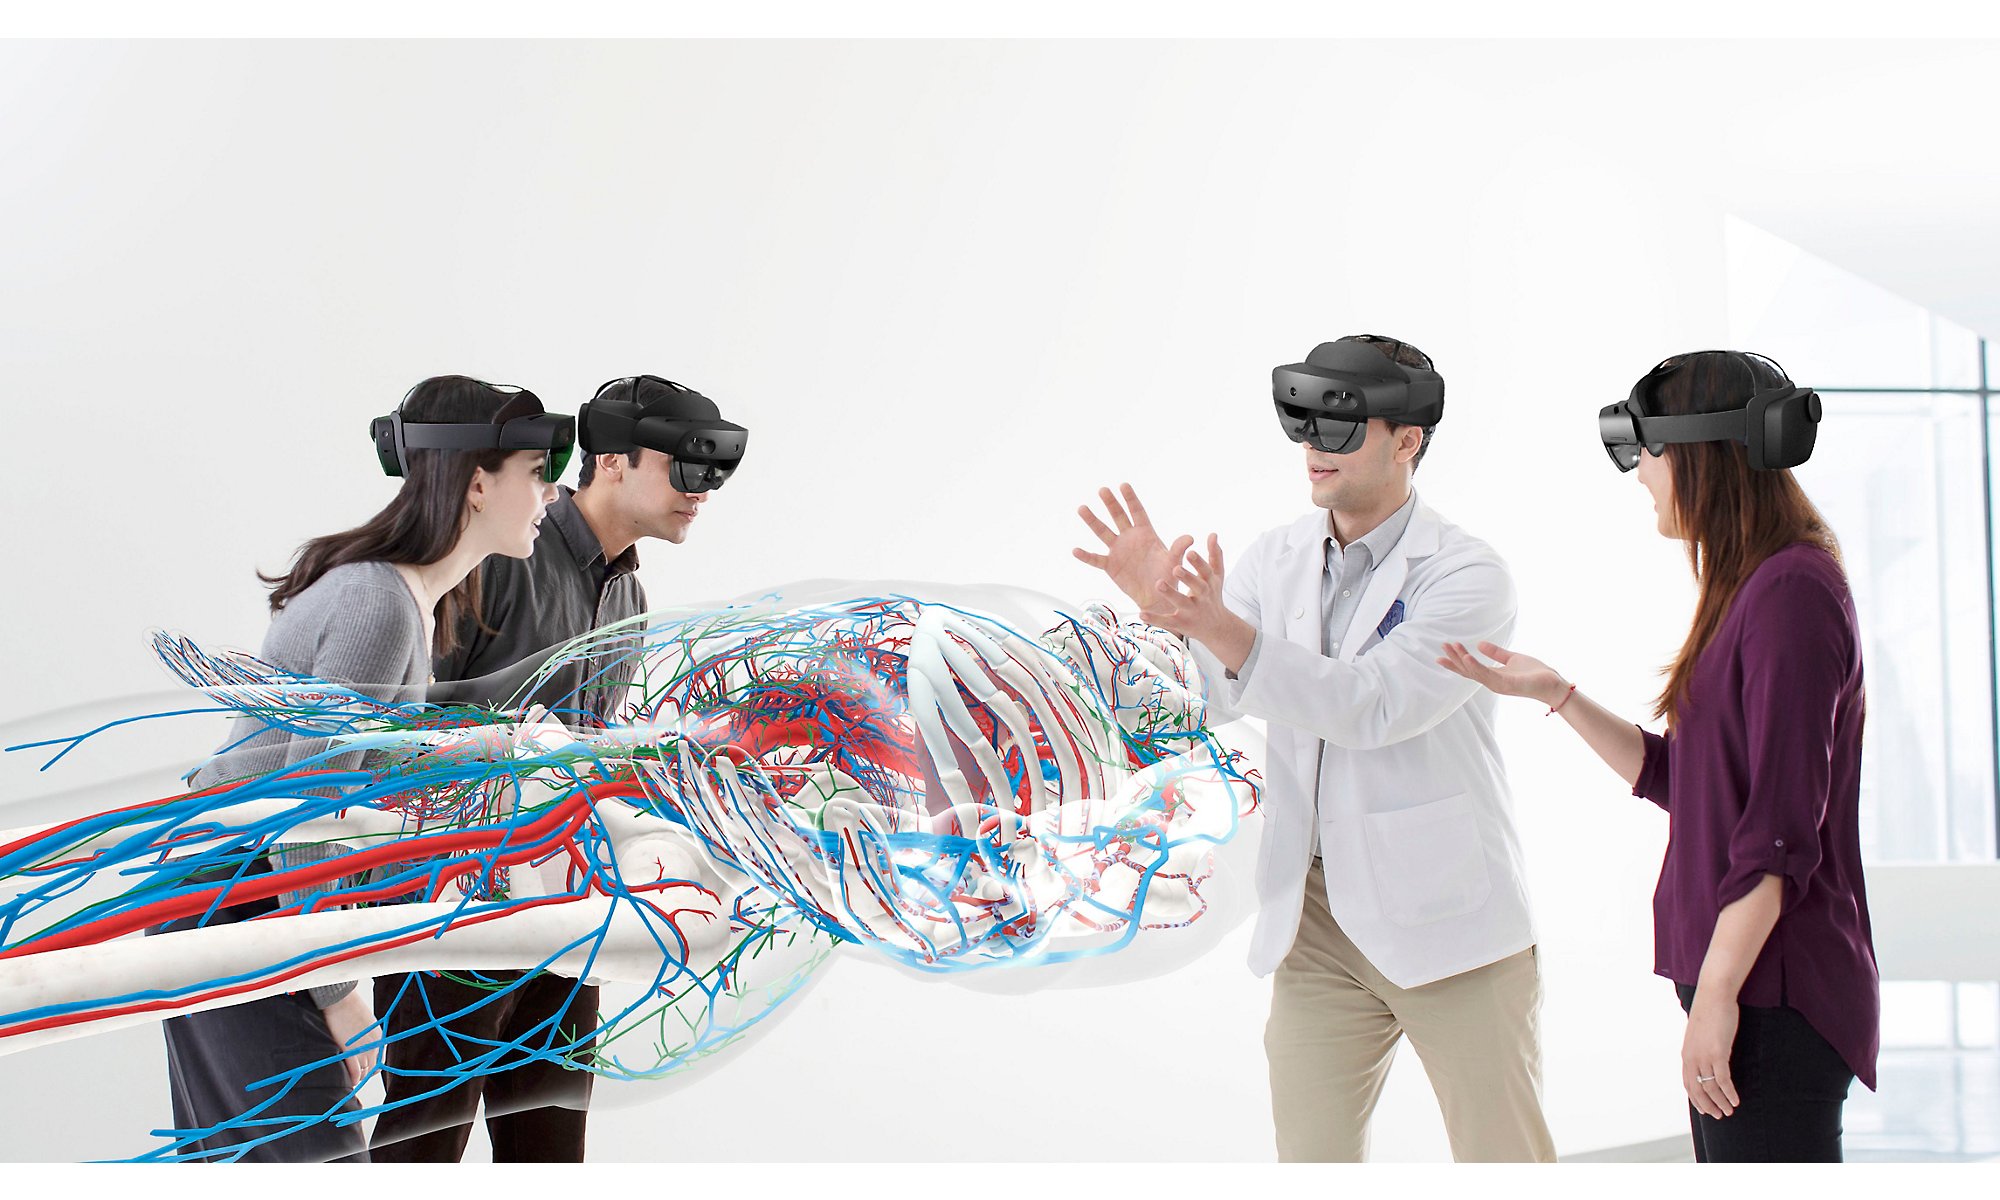 Dört kişi HoloLens 2 cihazlarını takarak büyük bir insan vücudunu ve damarlarını görüntüledi.